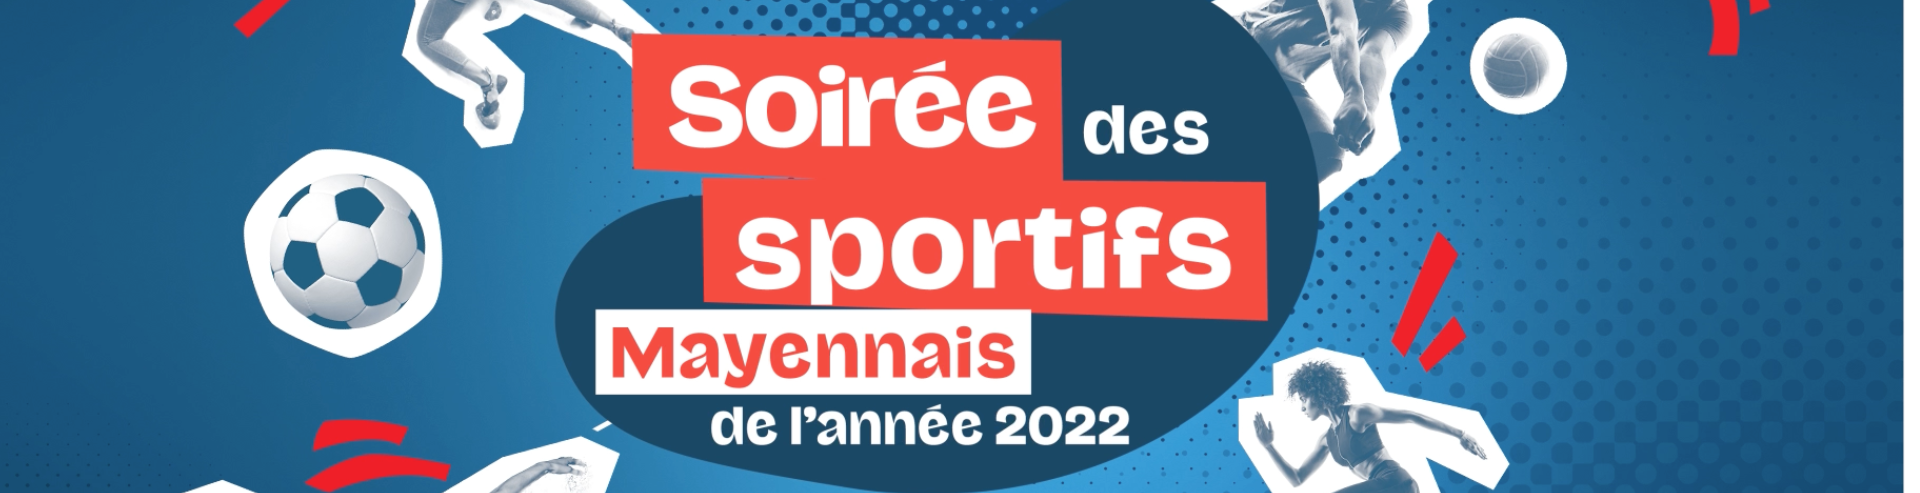 Tentez de remporter vos places pour la soirée des sportifs mayennais 2022!